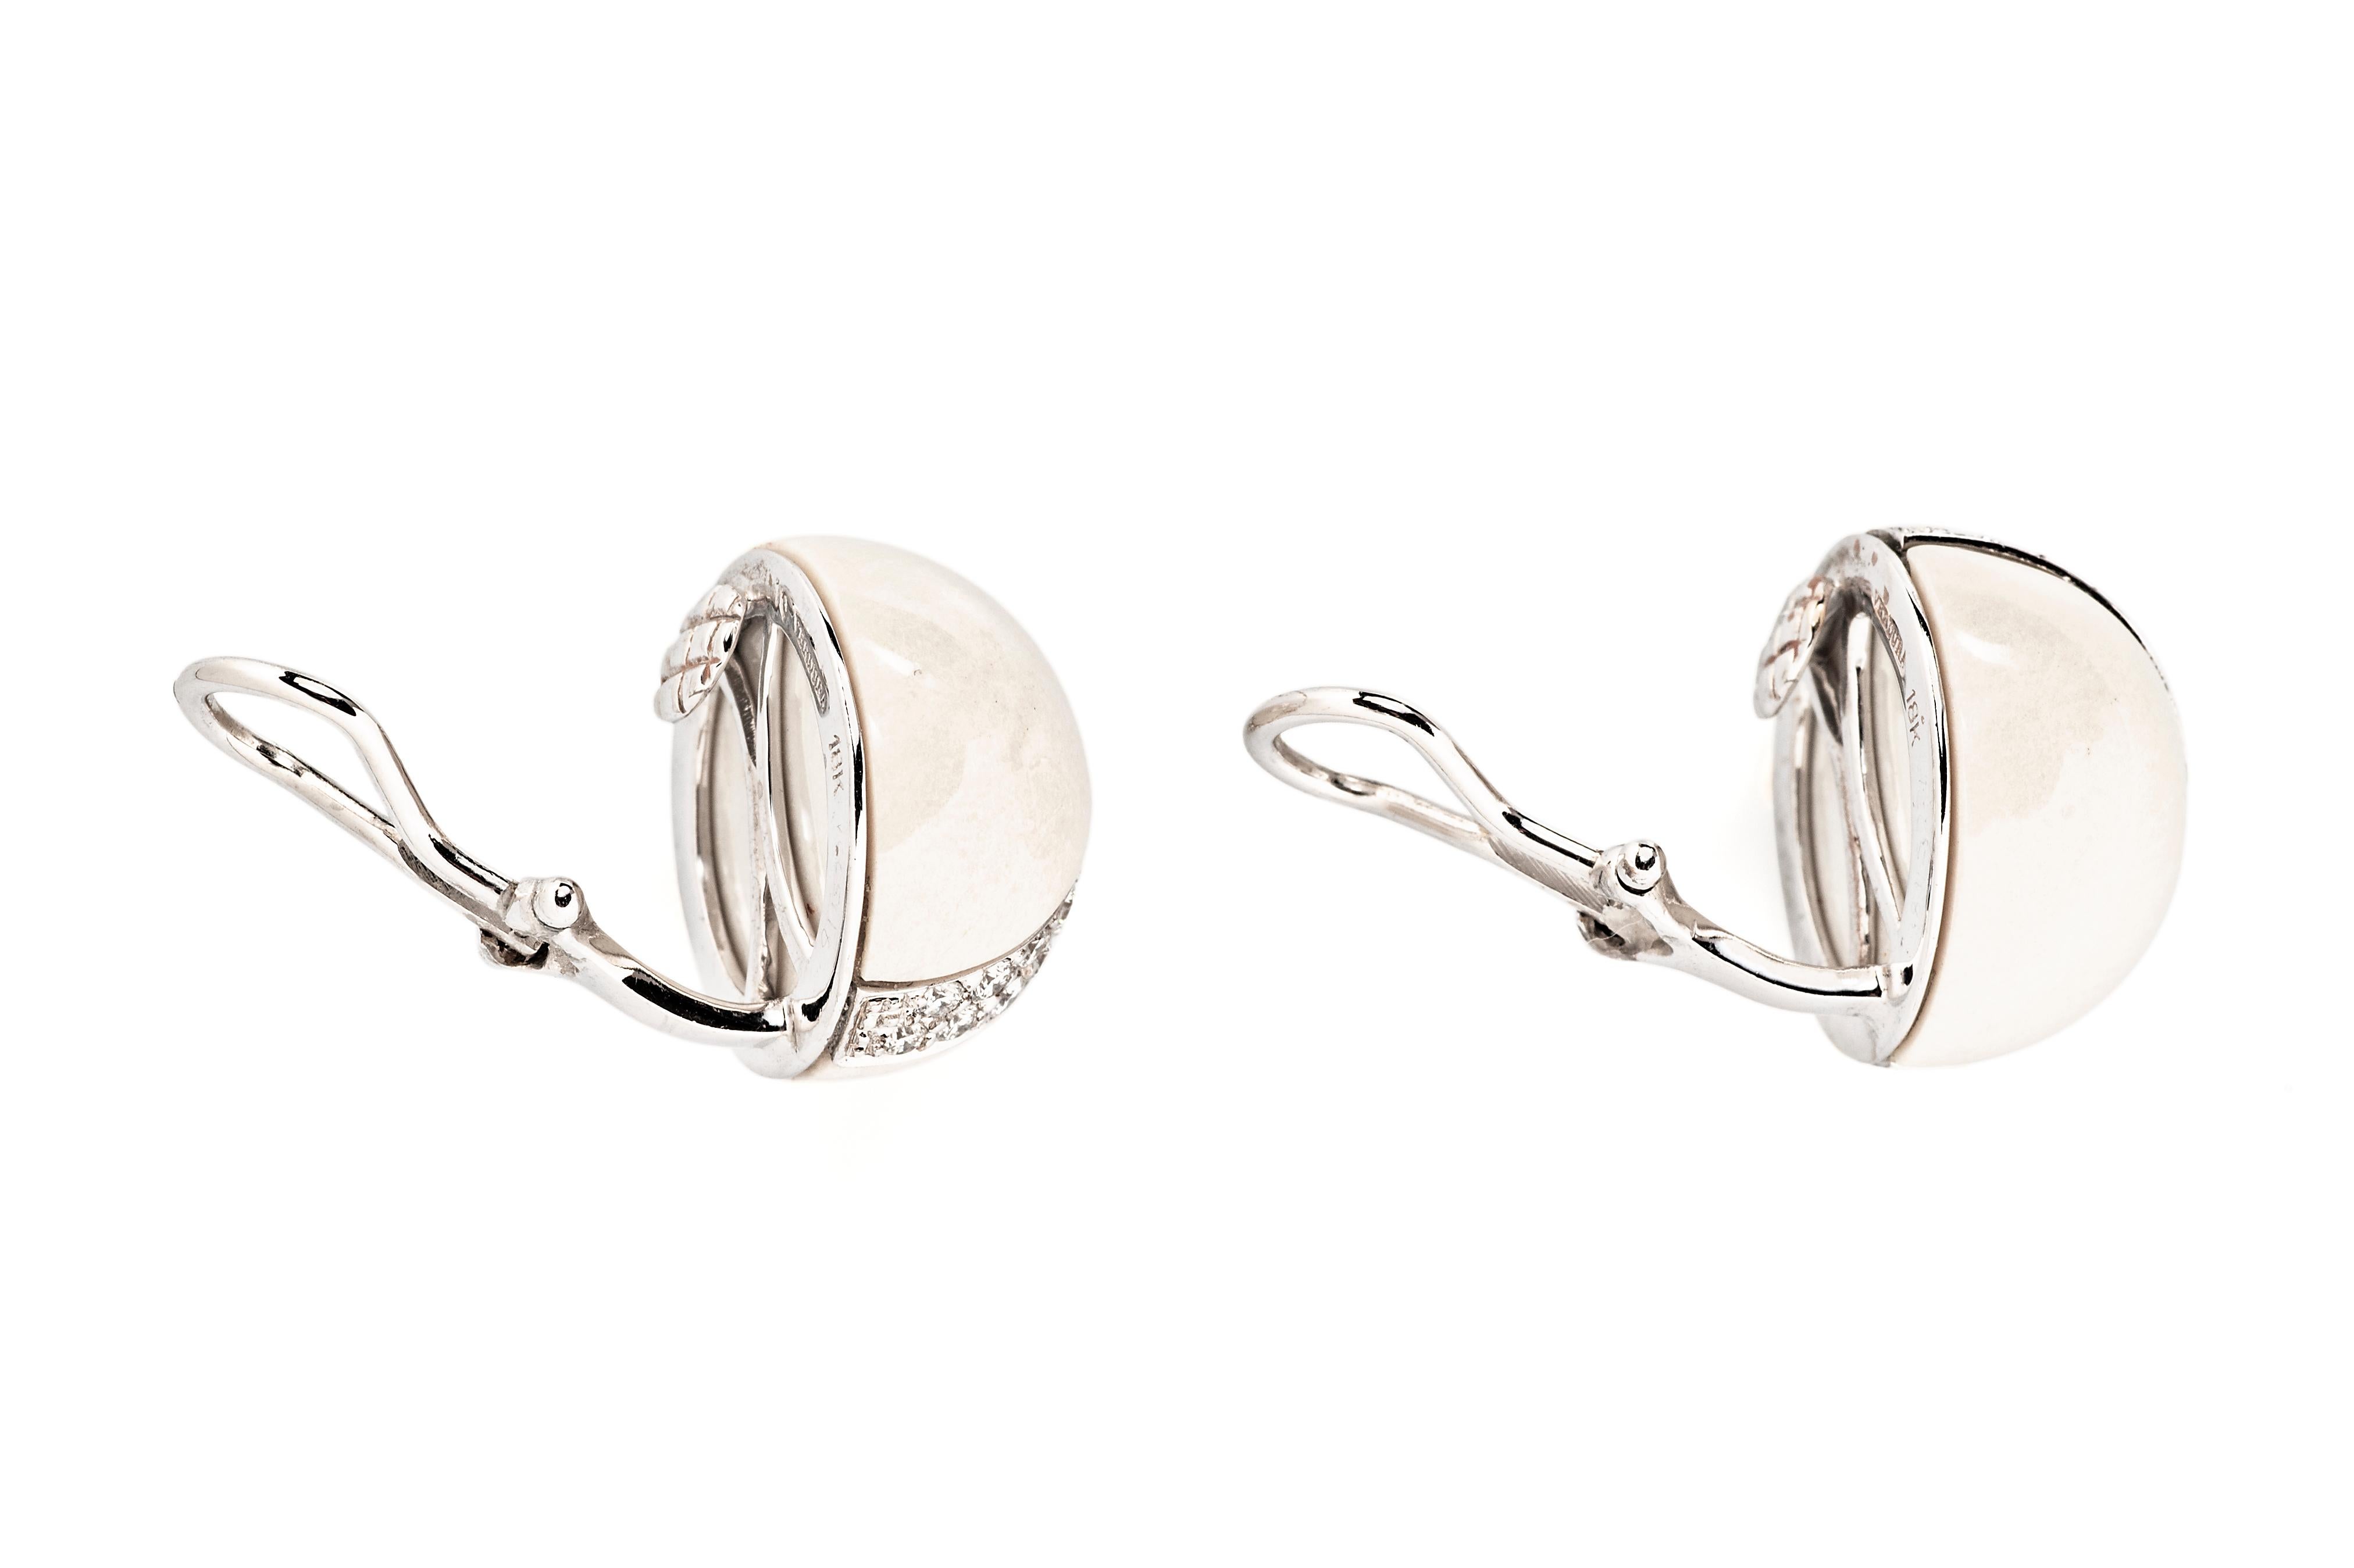 Ces clips d'oreilles Verdura, qui constituent un élément de base de la joaillerie chic, présentent un dôme en pierre dure blanche traversé par une bande de diamants ronds brillants.

Le diamètre est de 0,625